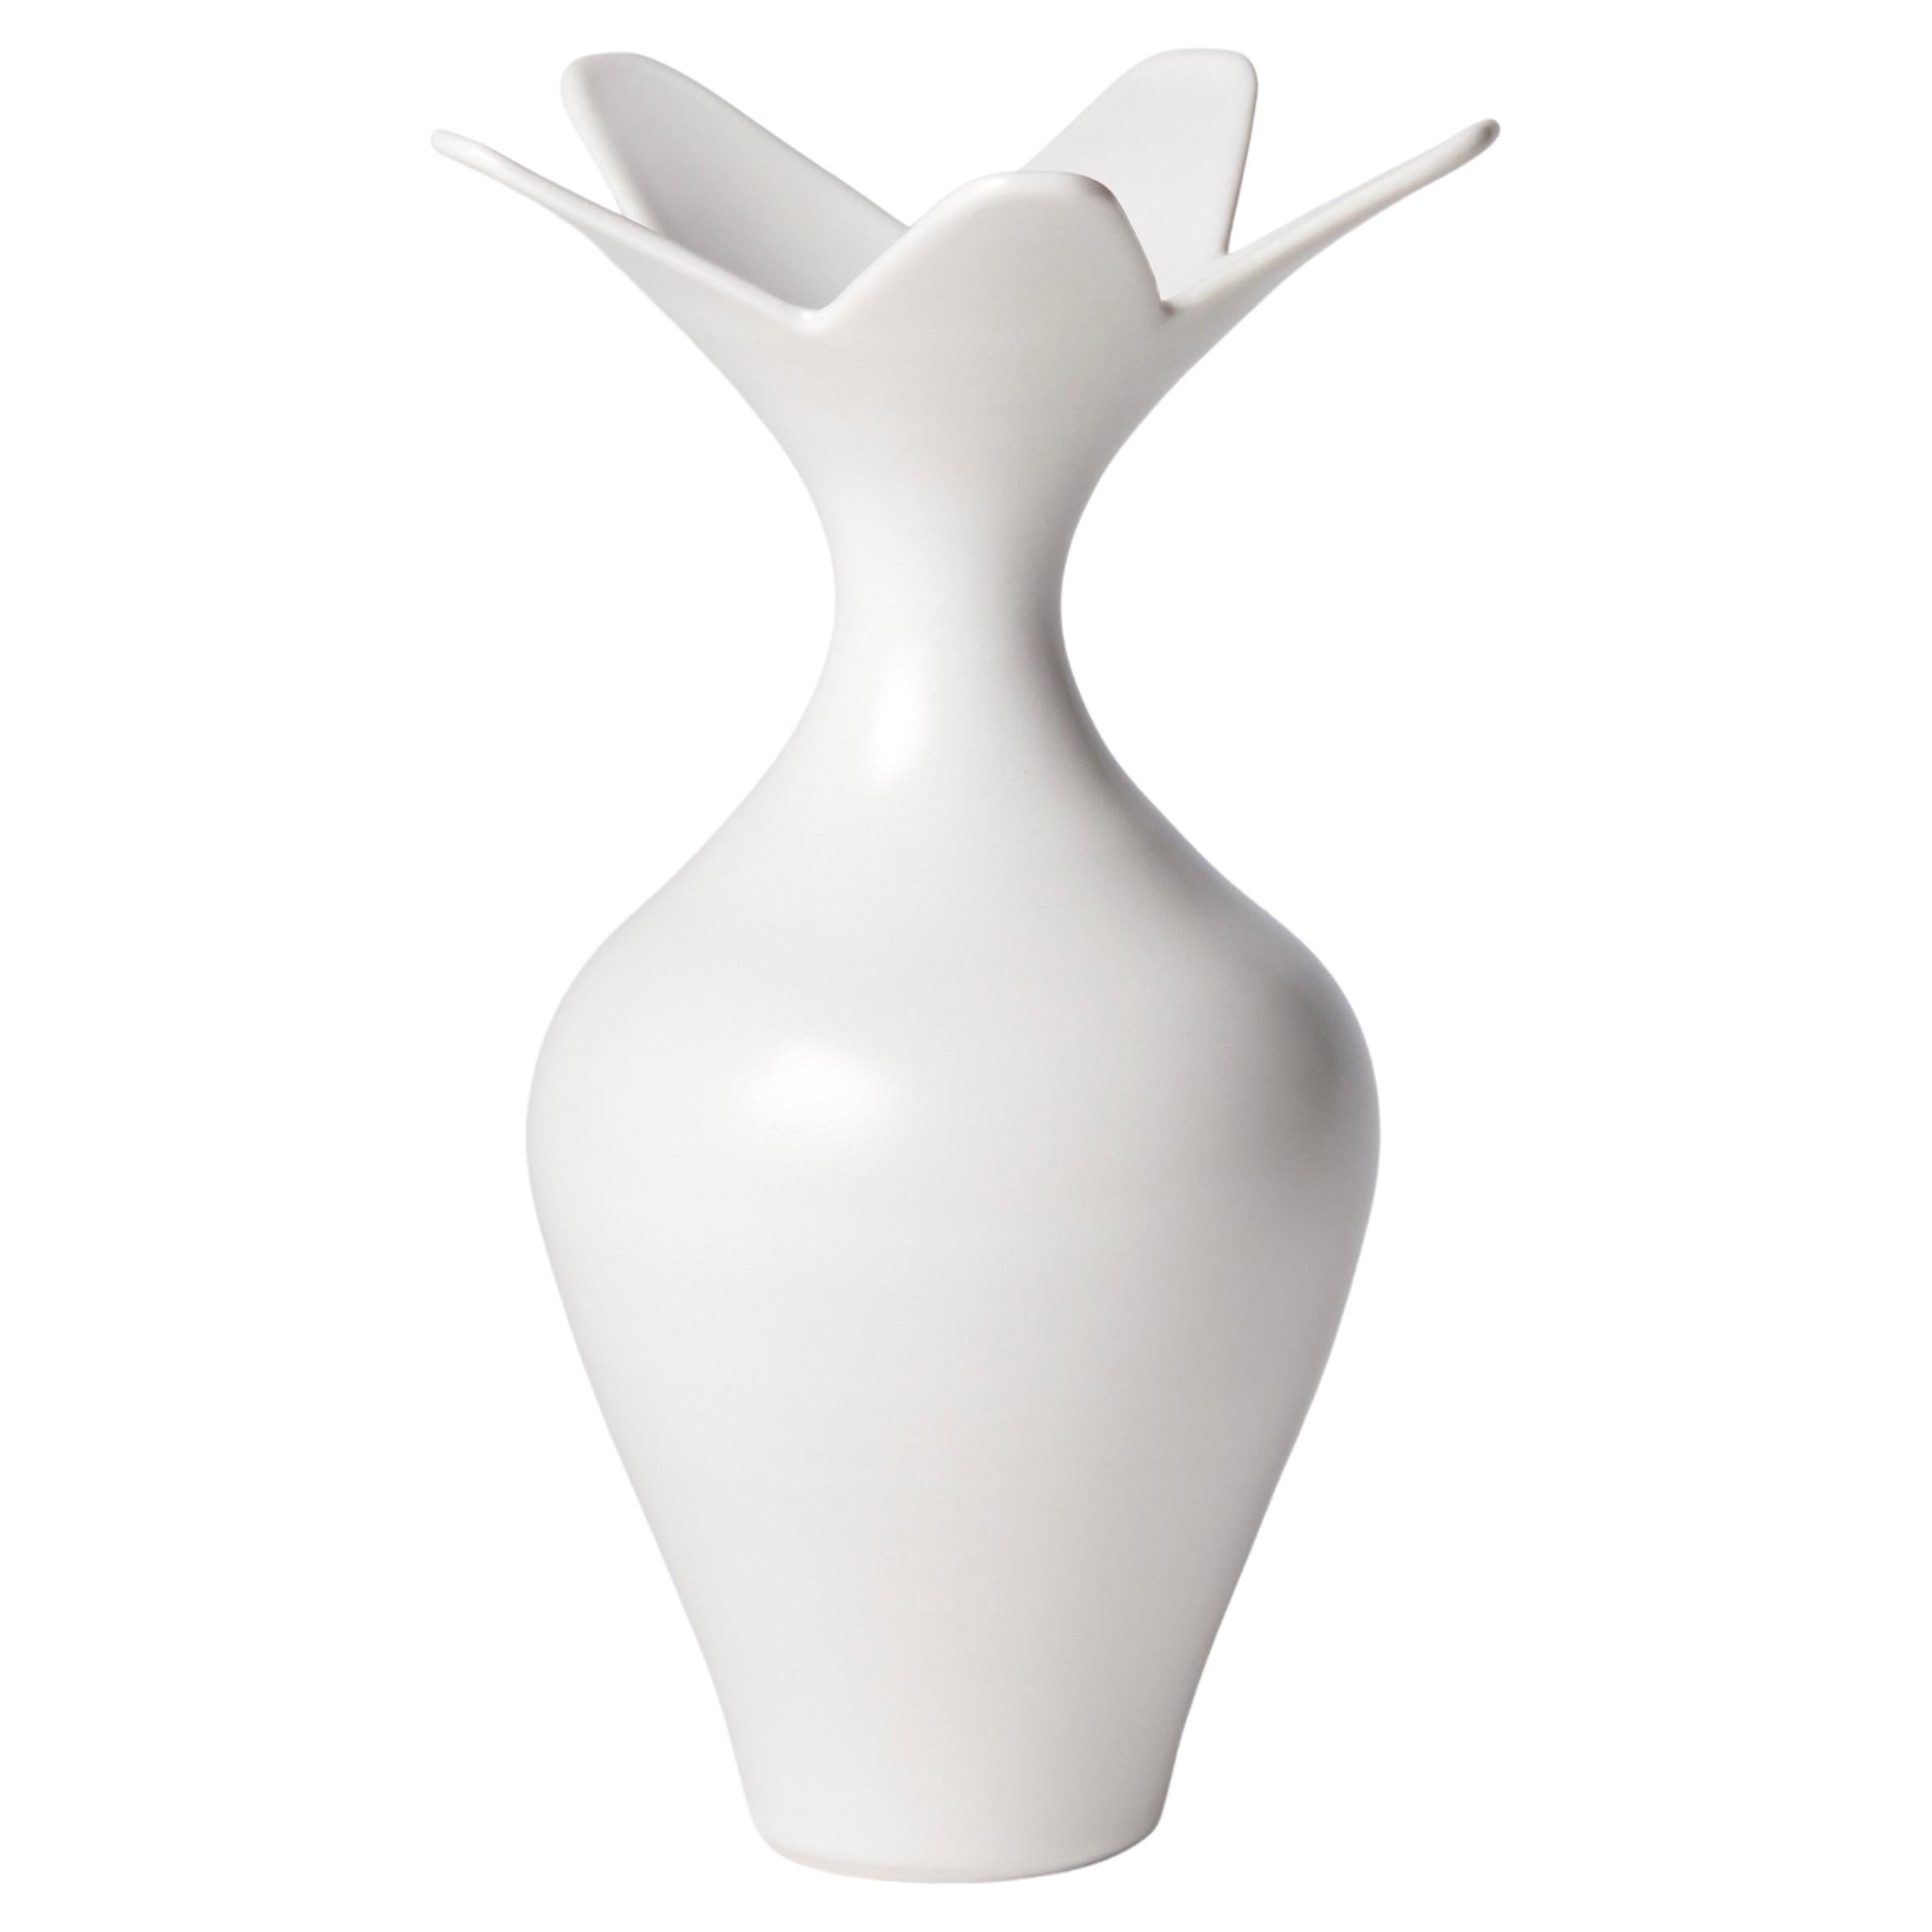 Vase with Star Rim, a Unique White Porcelain Vase by Vivienne Foley